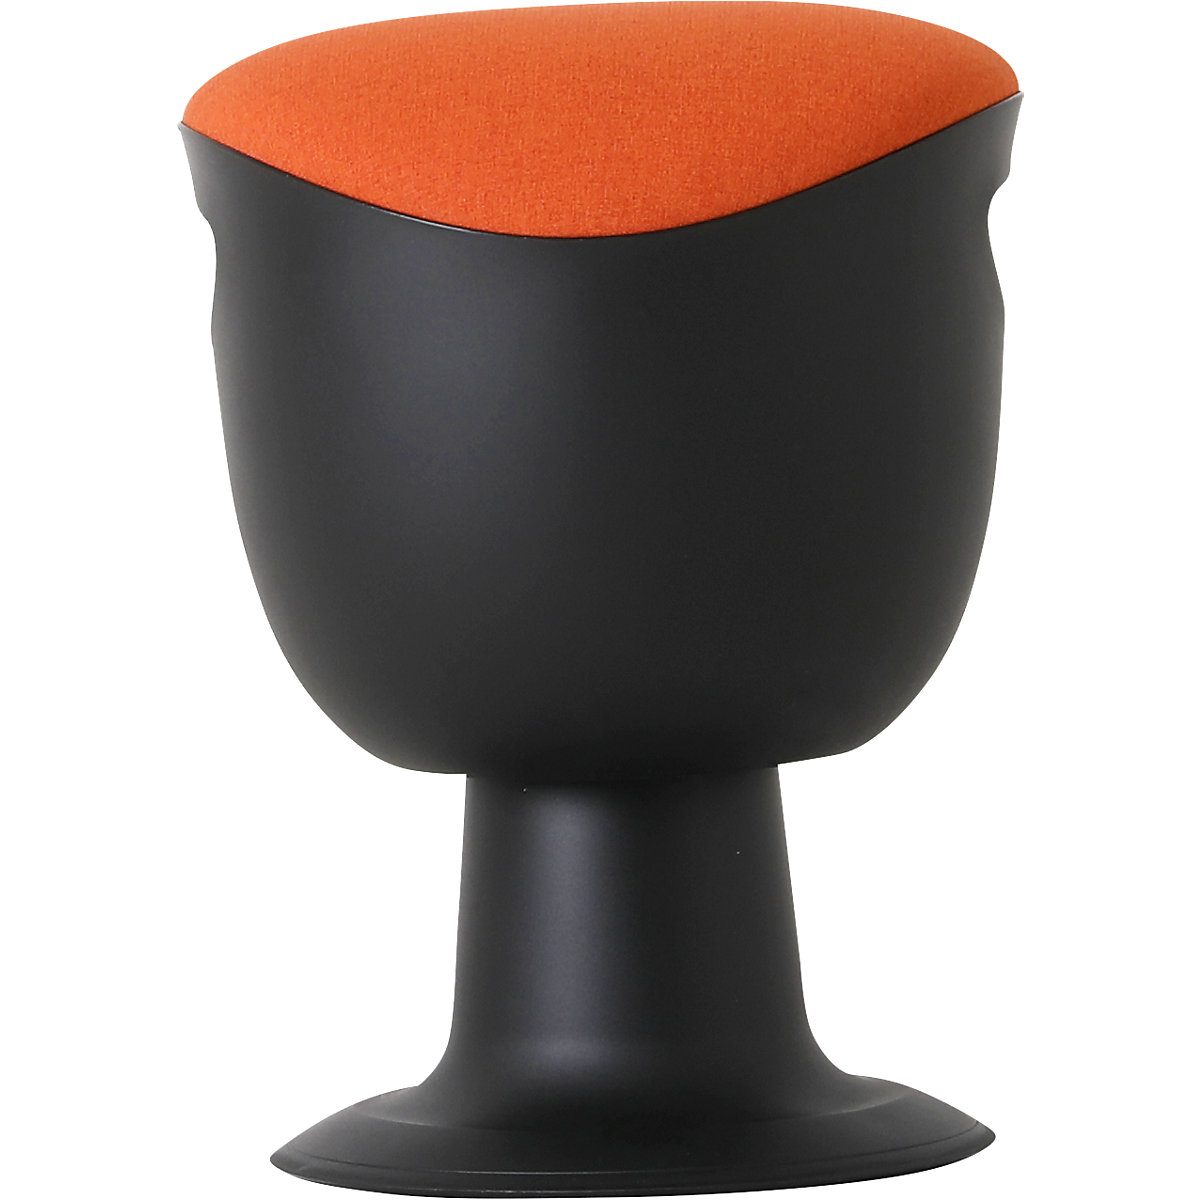 Multibeweglicher Sitzhocker, höhenverstellbar 465 – 585 mm, Sitz gepolstert, Bezug orange